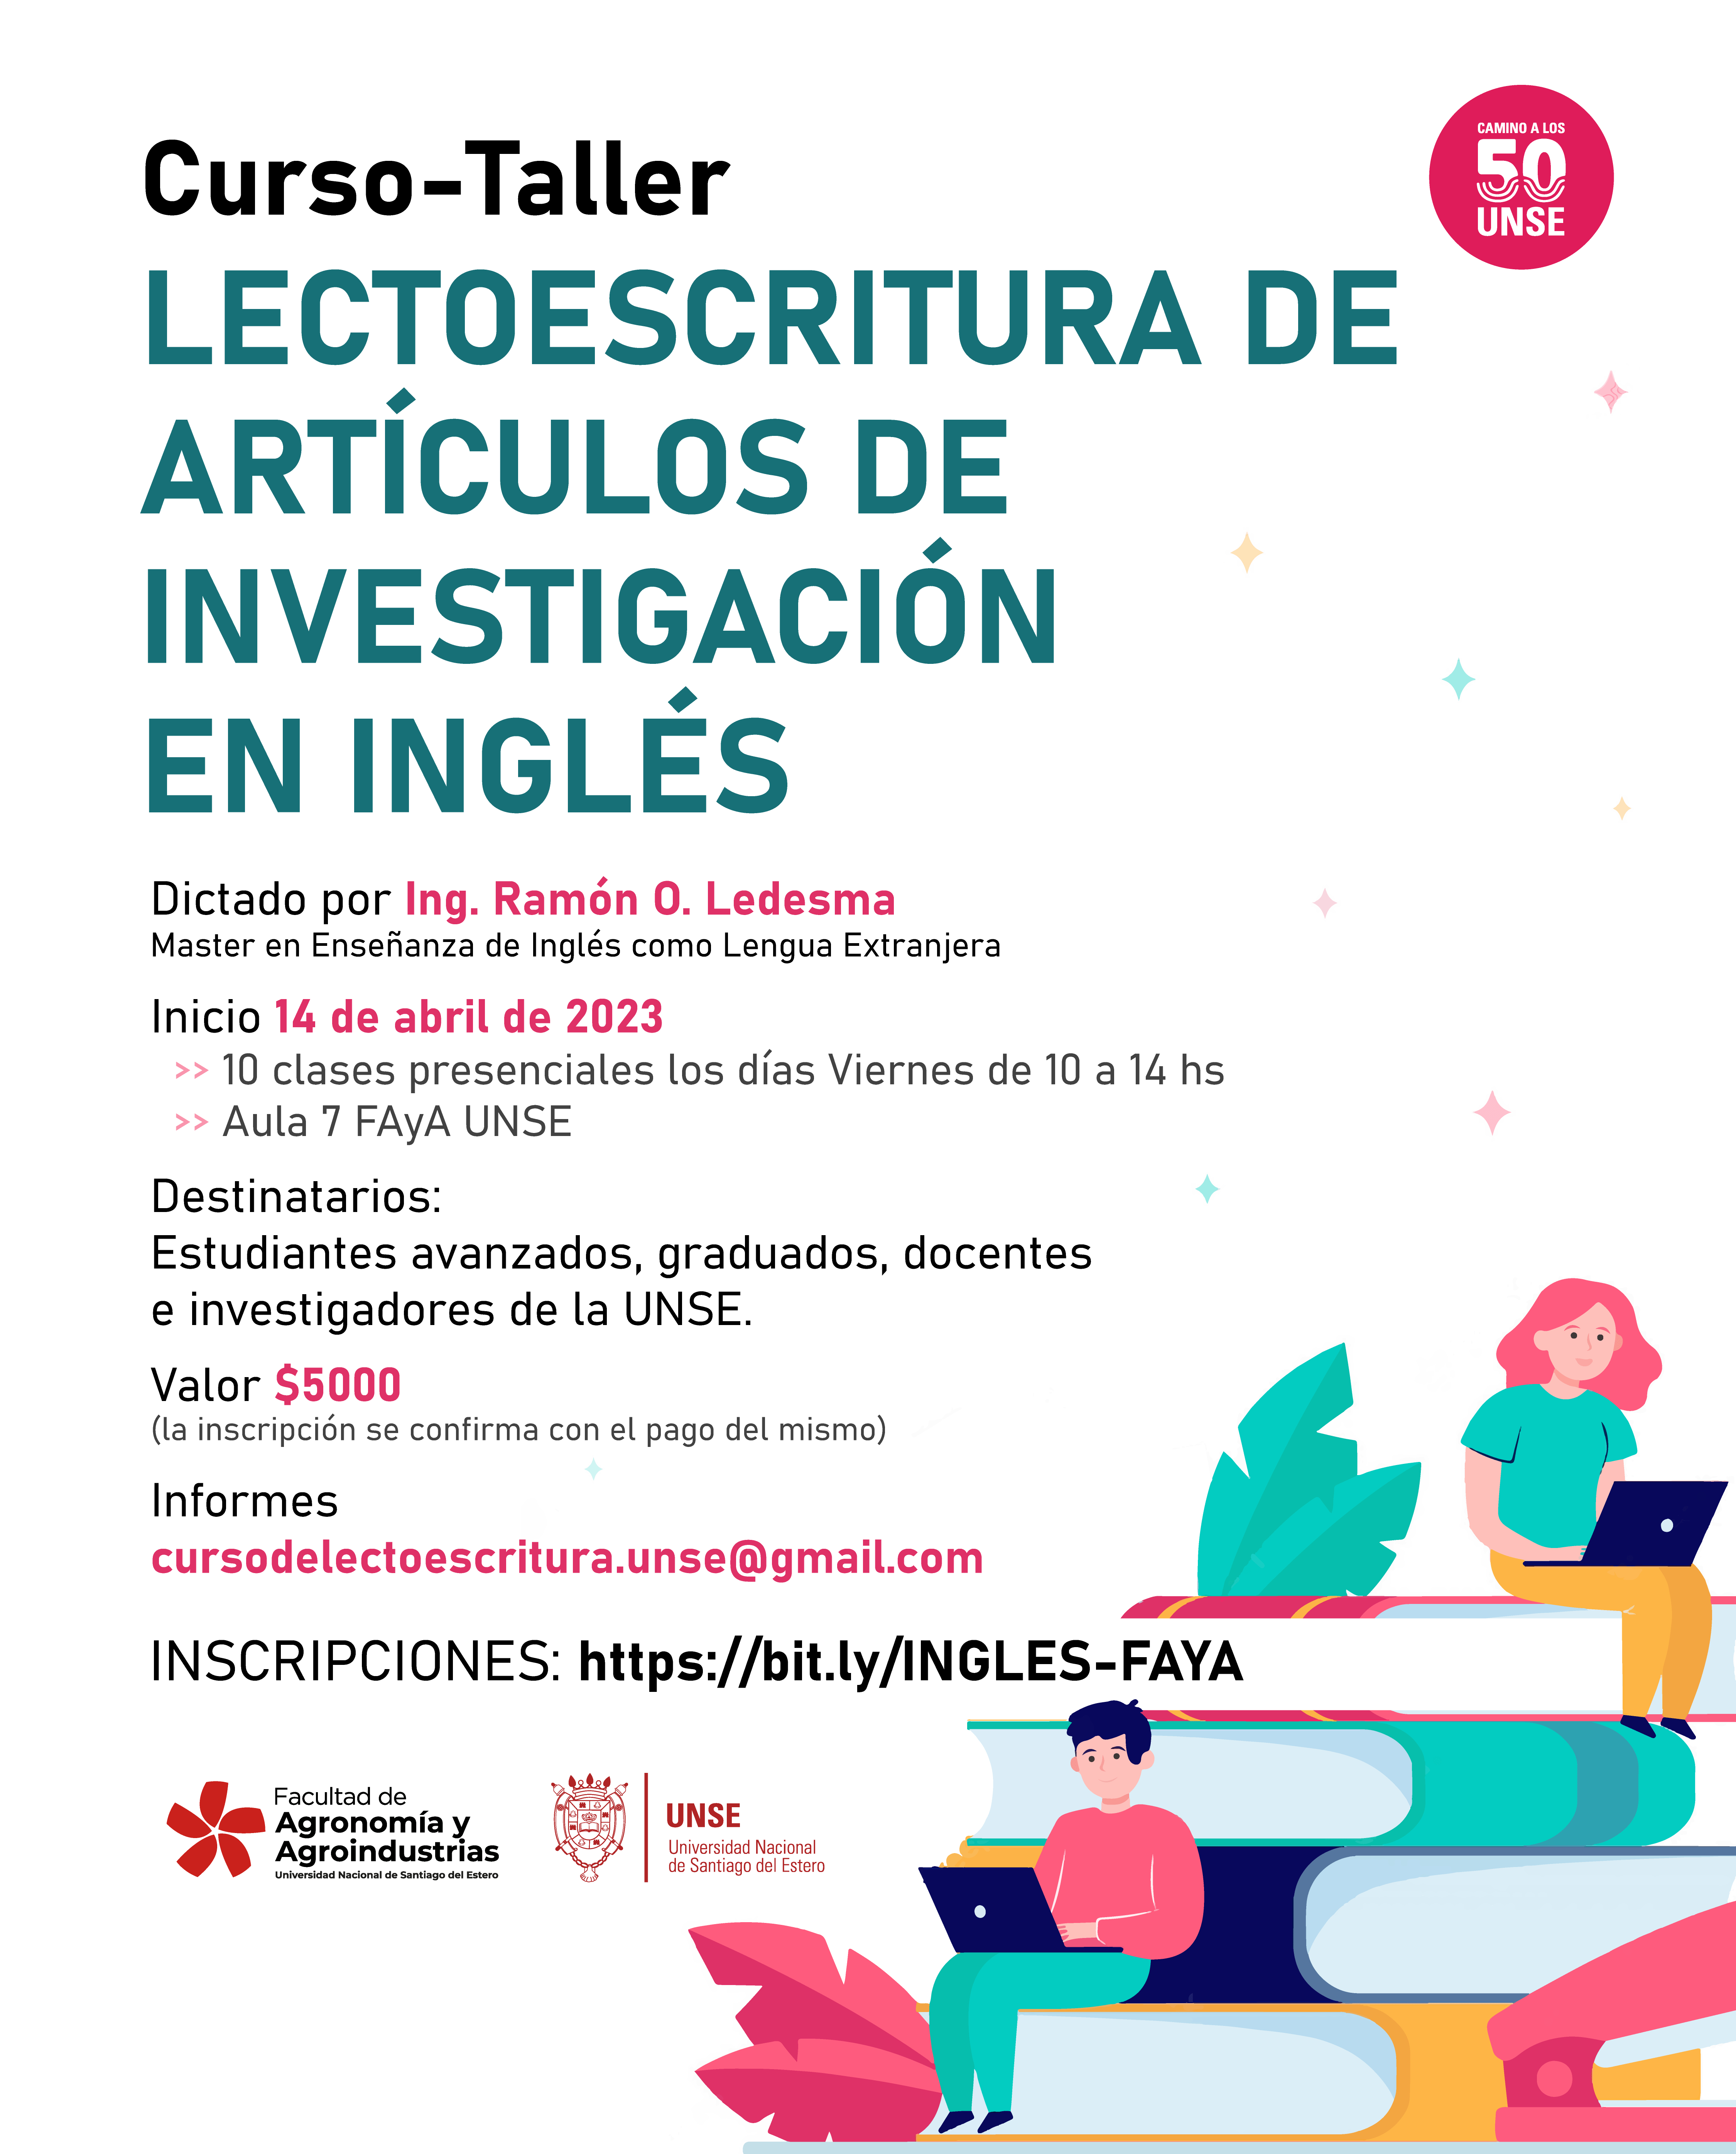 LECTOESCRITURA DE ARTÍCULOS DE INVESTIGACIÓN EN INGLÉS